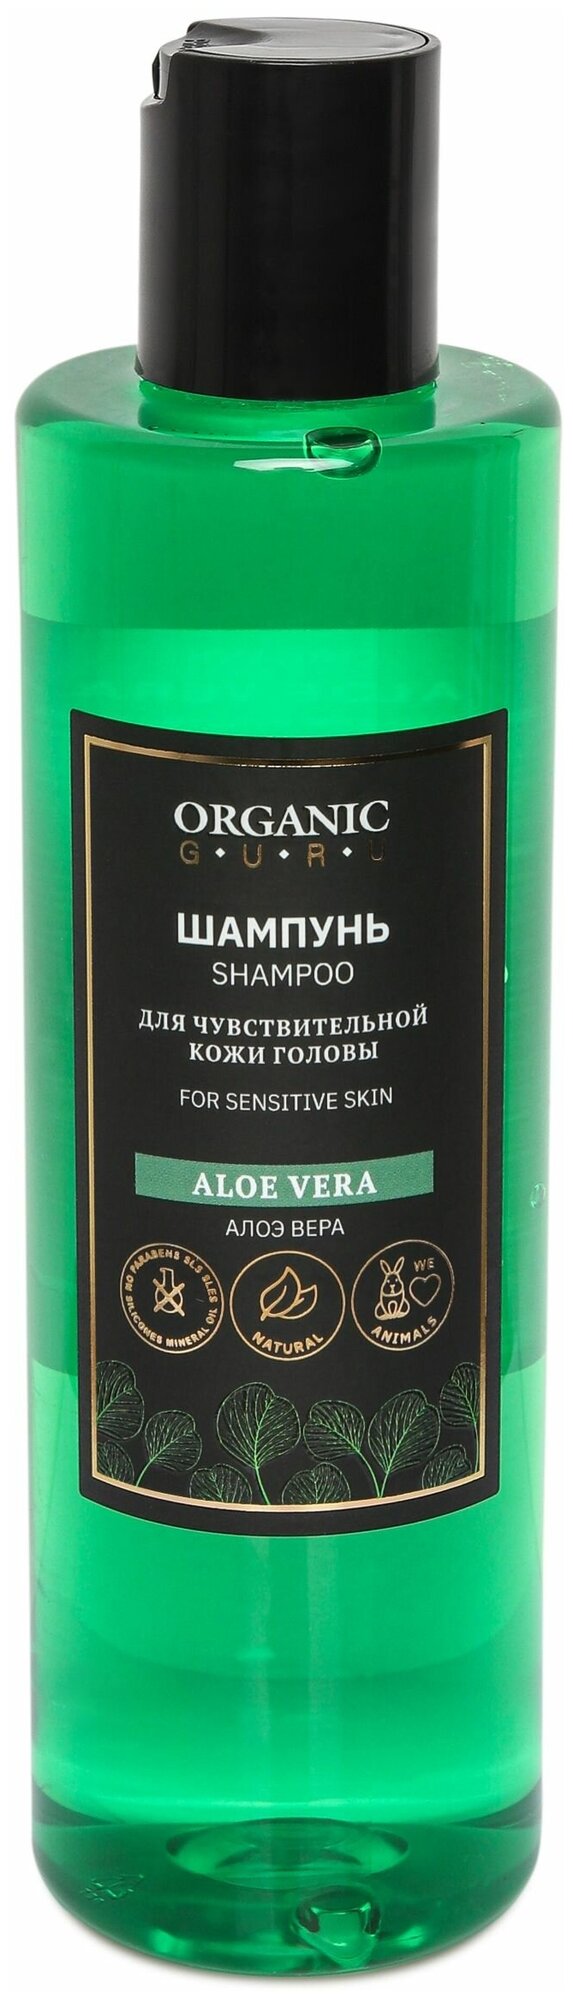 Organic Guru Шампунь для волос "Алоэ Вера" для чувствительной кожи головы Органик Гуру Без SLS и парабенов, бессульфатный, 250 мл.